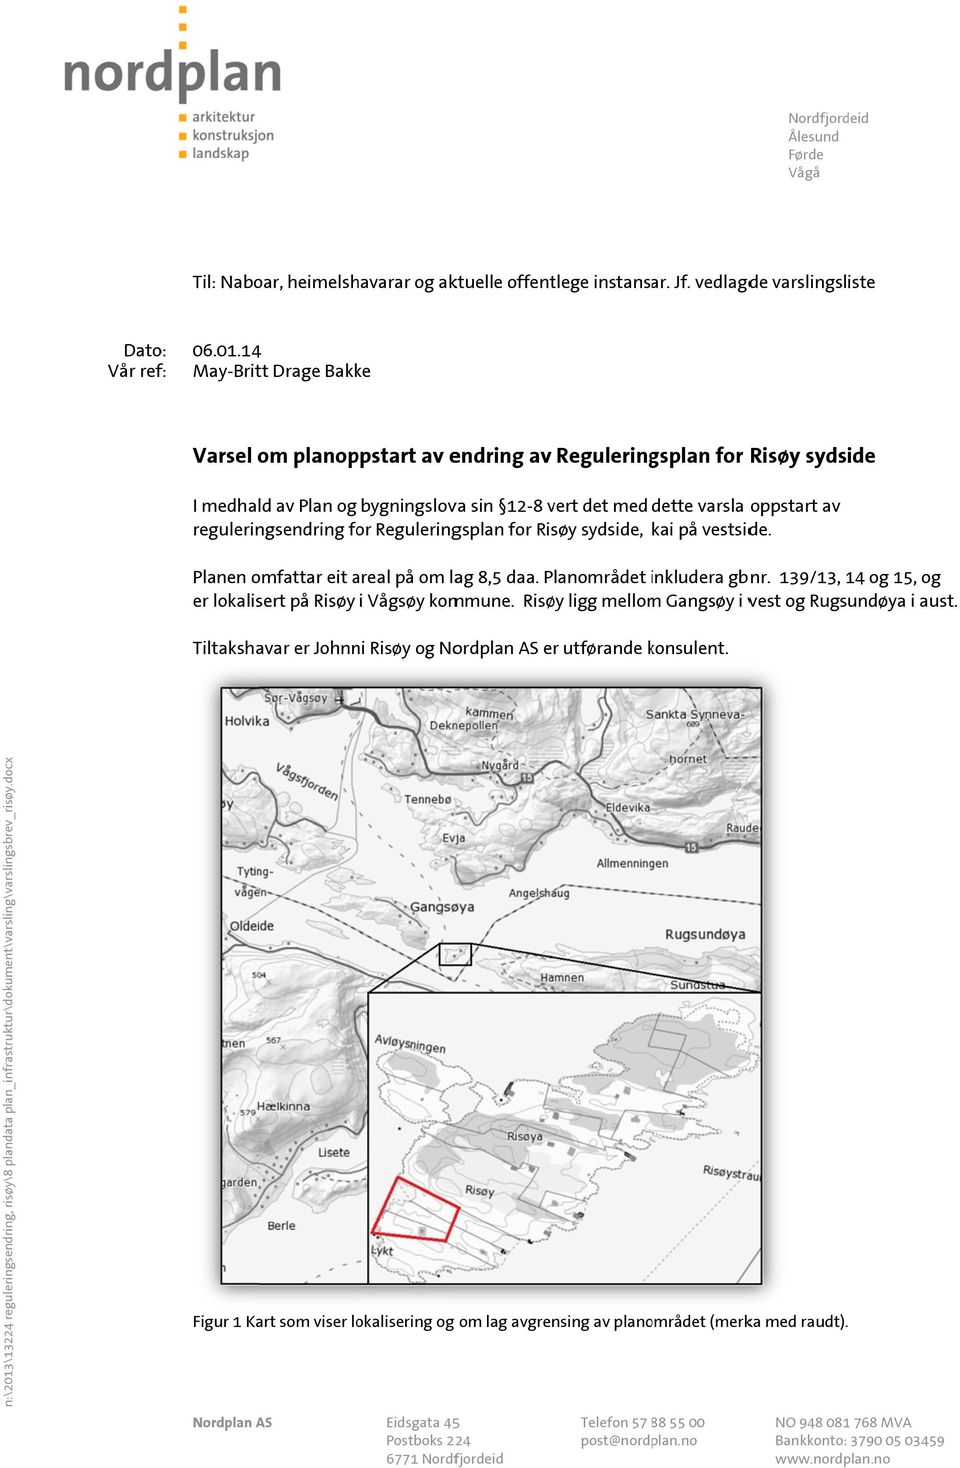 reguleringsendring for Reguleringsplan for Risøy sydside, kai på vestside. Planen omfattar eit areal på om lag 8,5 daa. Planområdet inkludera i gbnr.